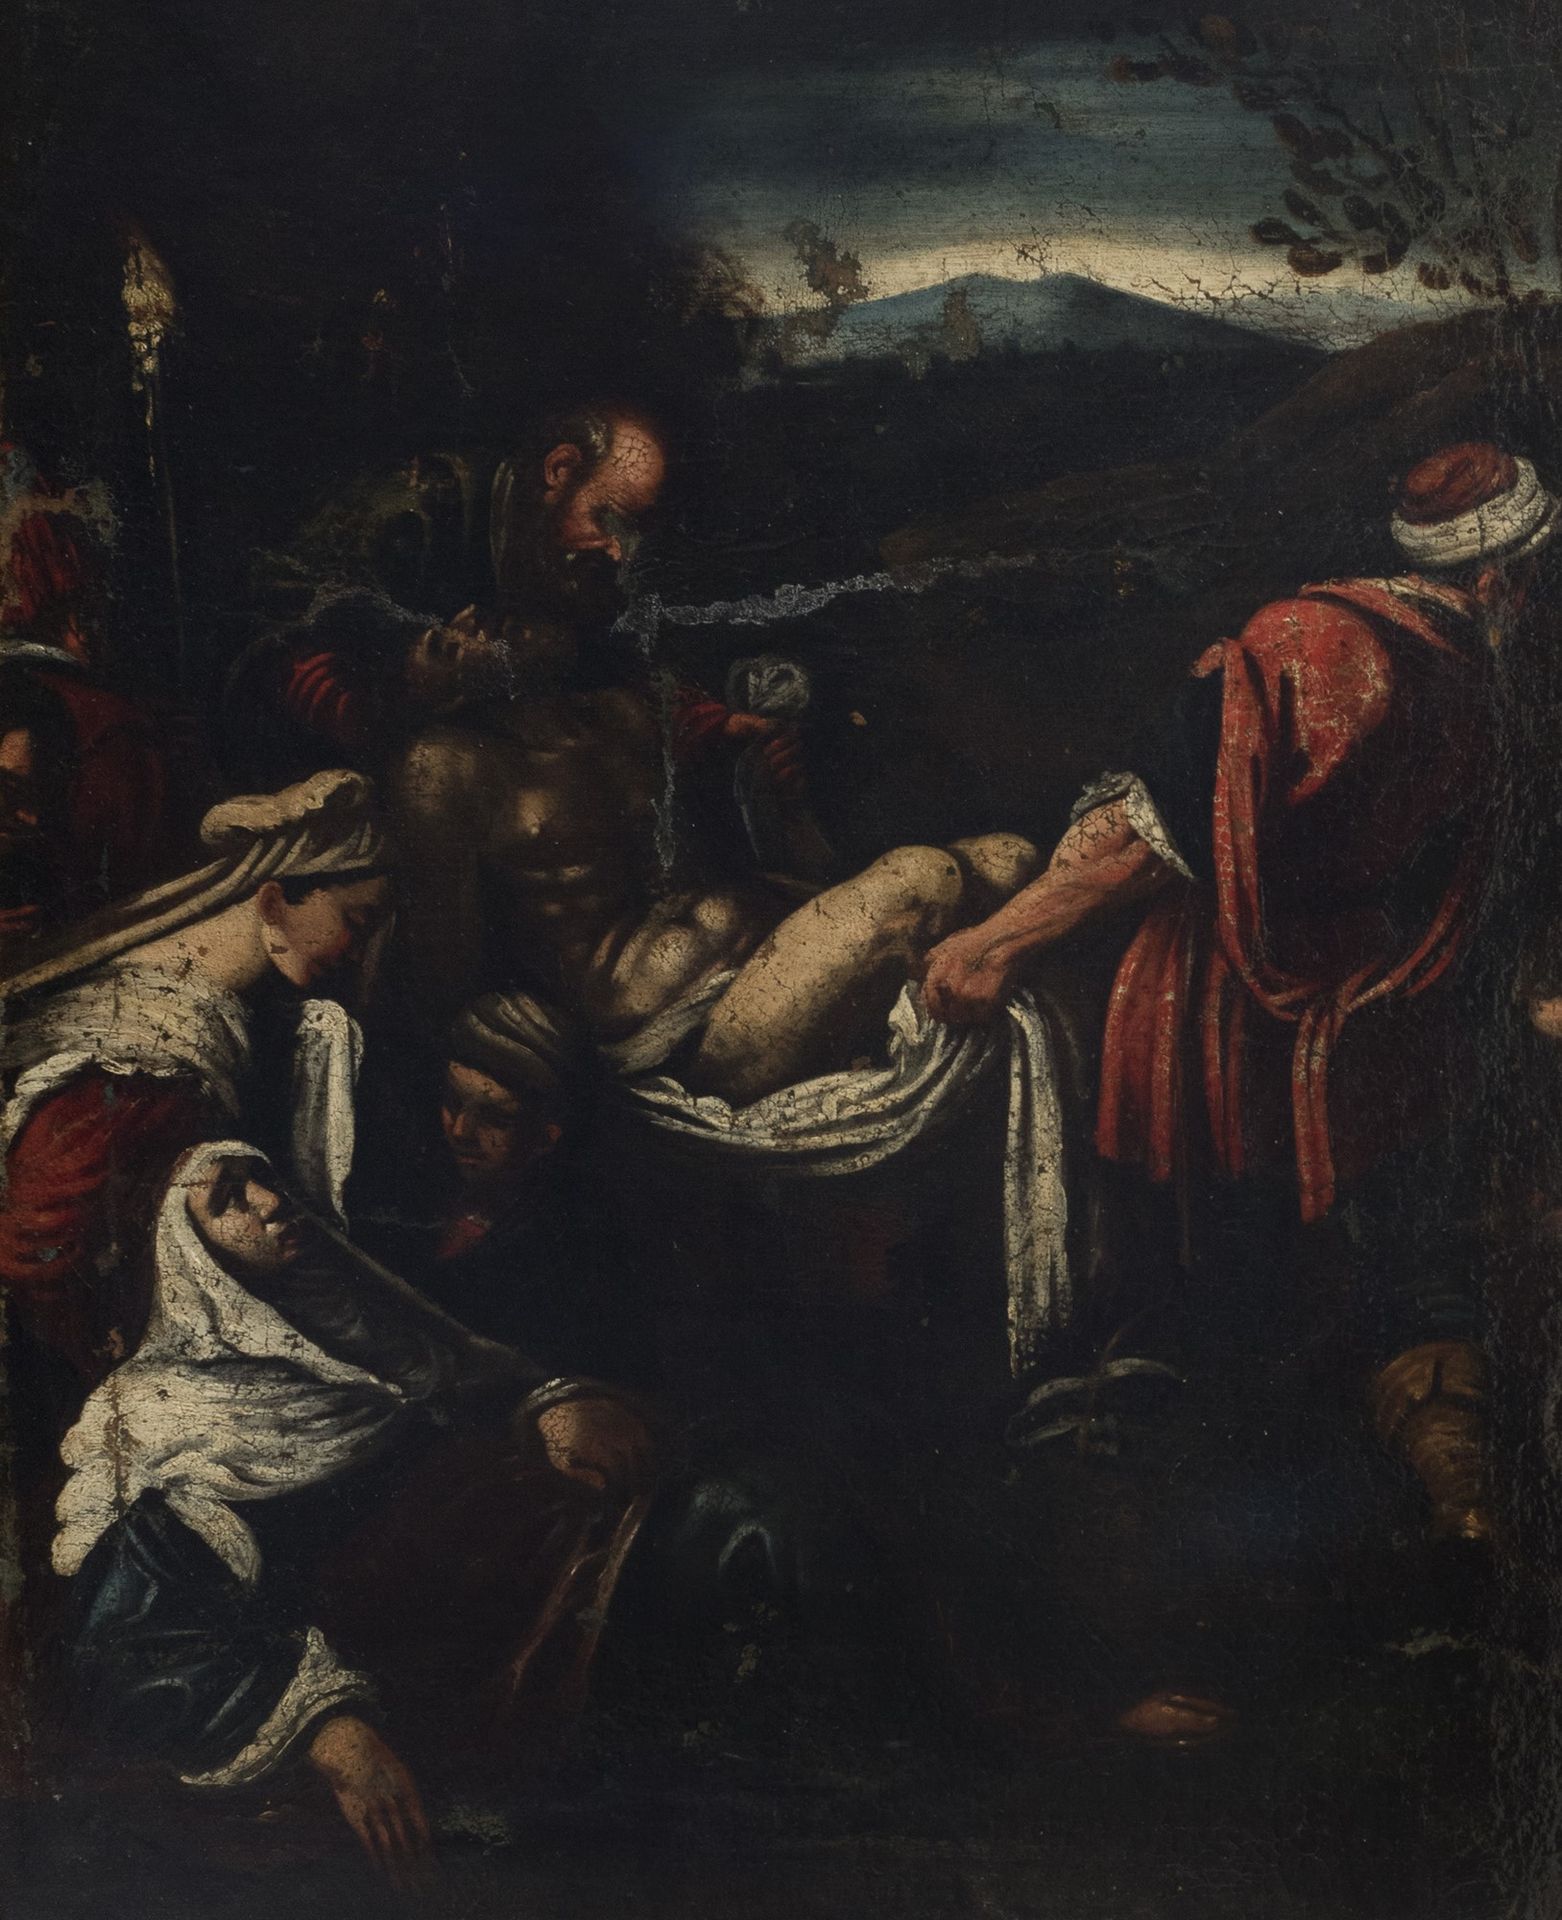 Seguace di Jacopo Bassano Anhänger von Jacopo Bassano - Absetzung von Christus

&hellip;